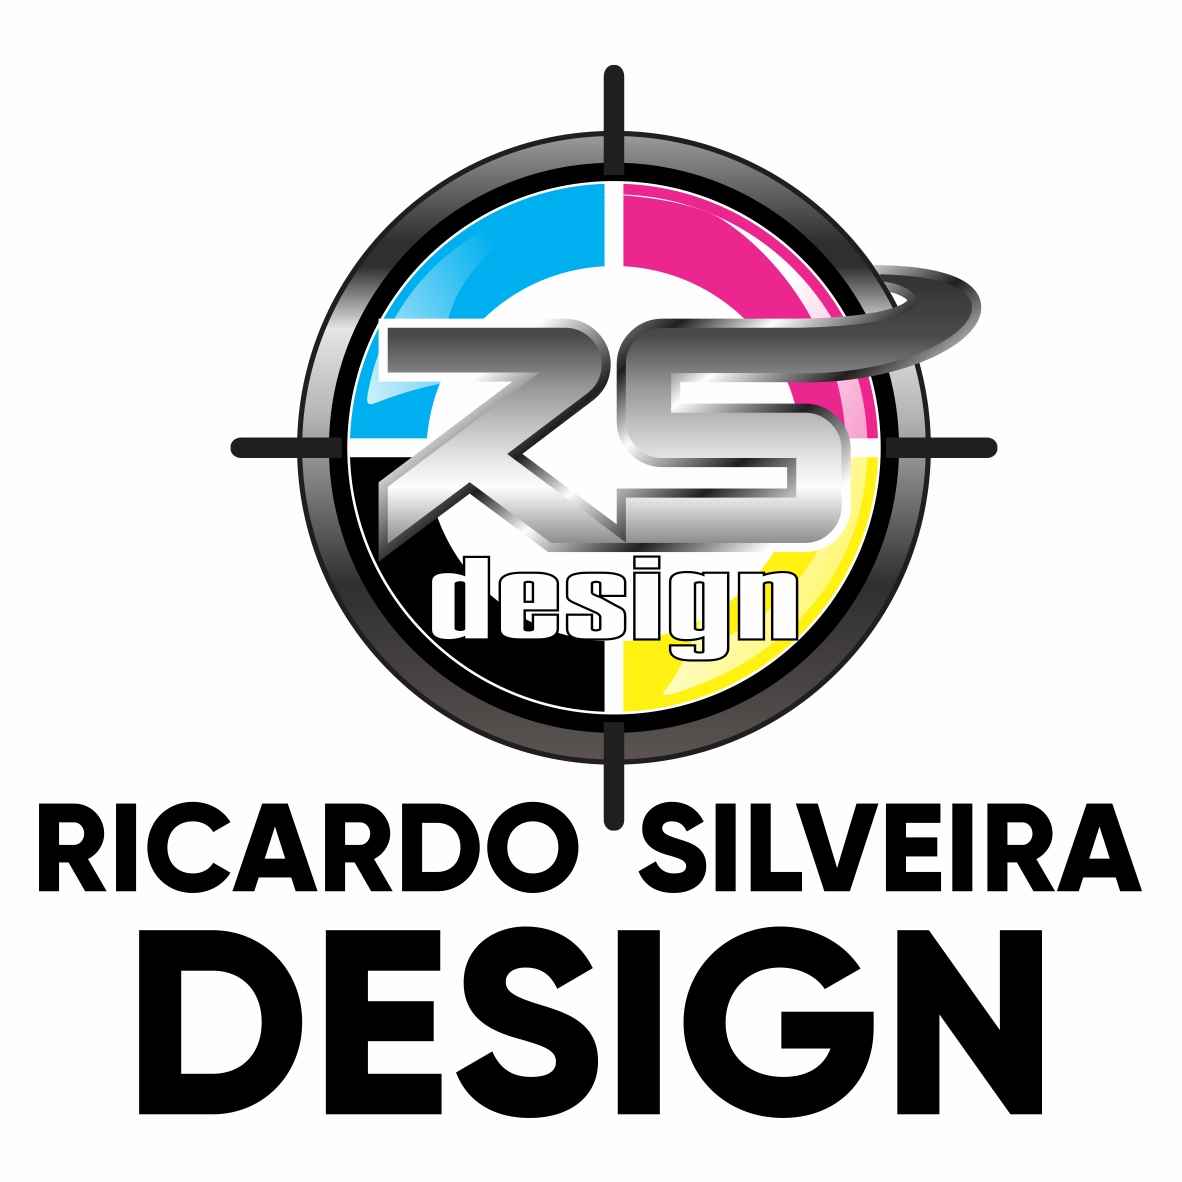 Ricardo Silveira Design